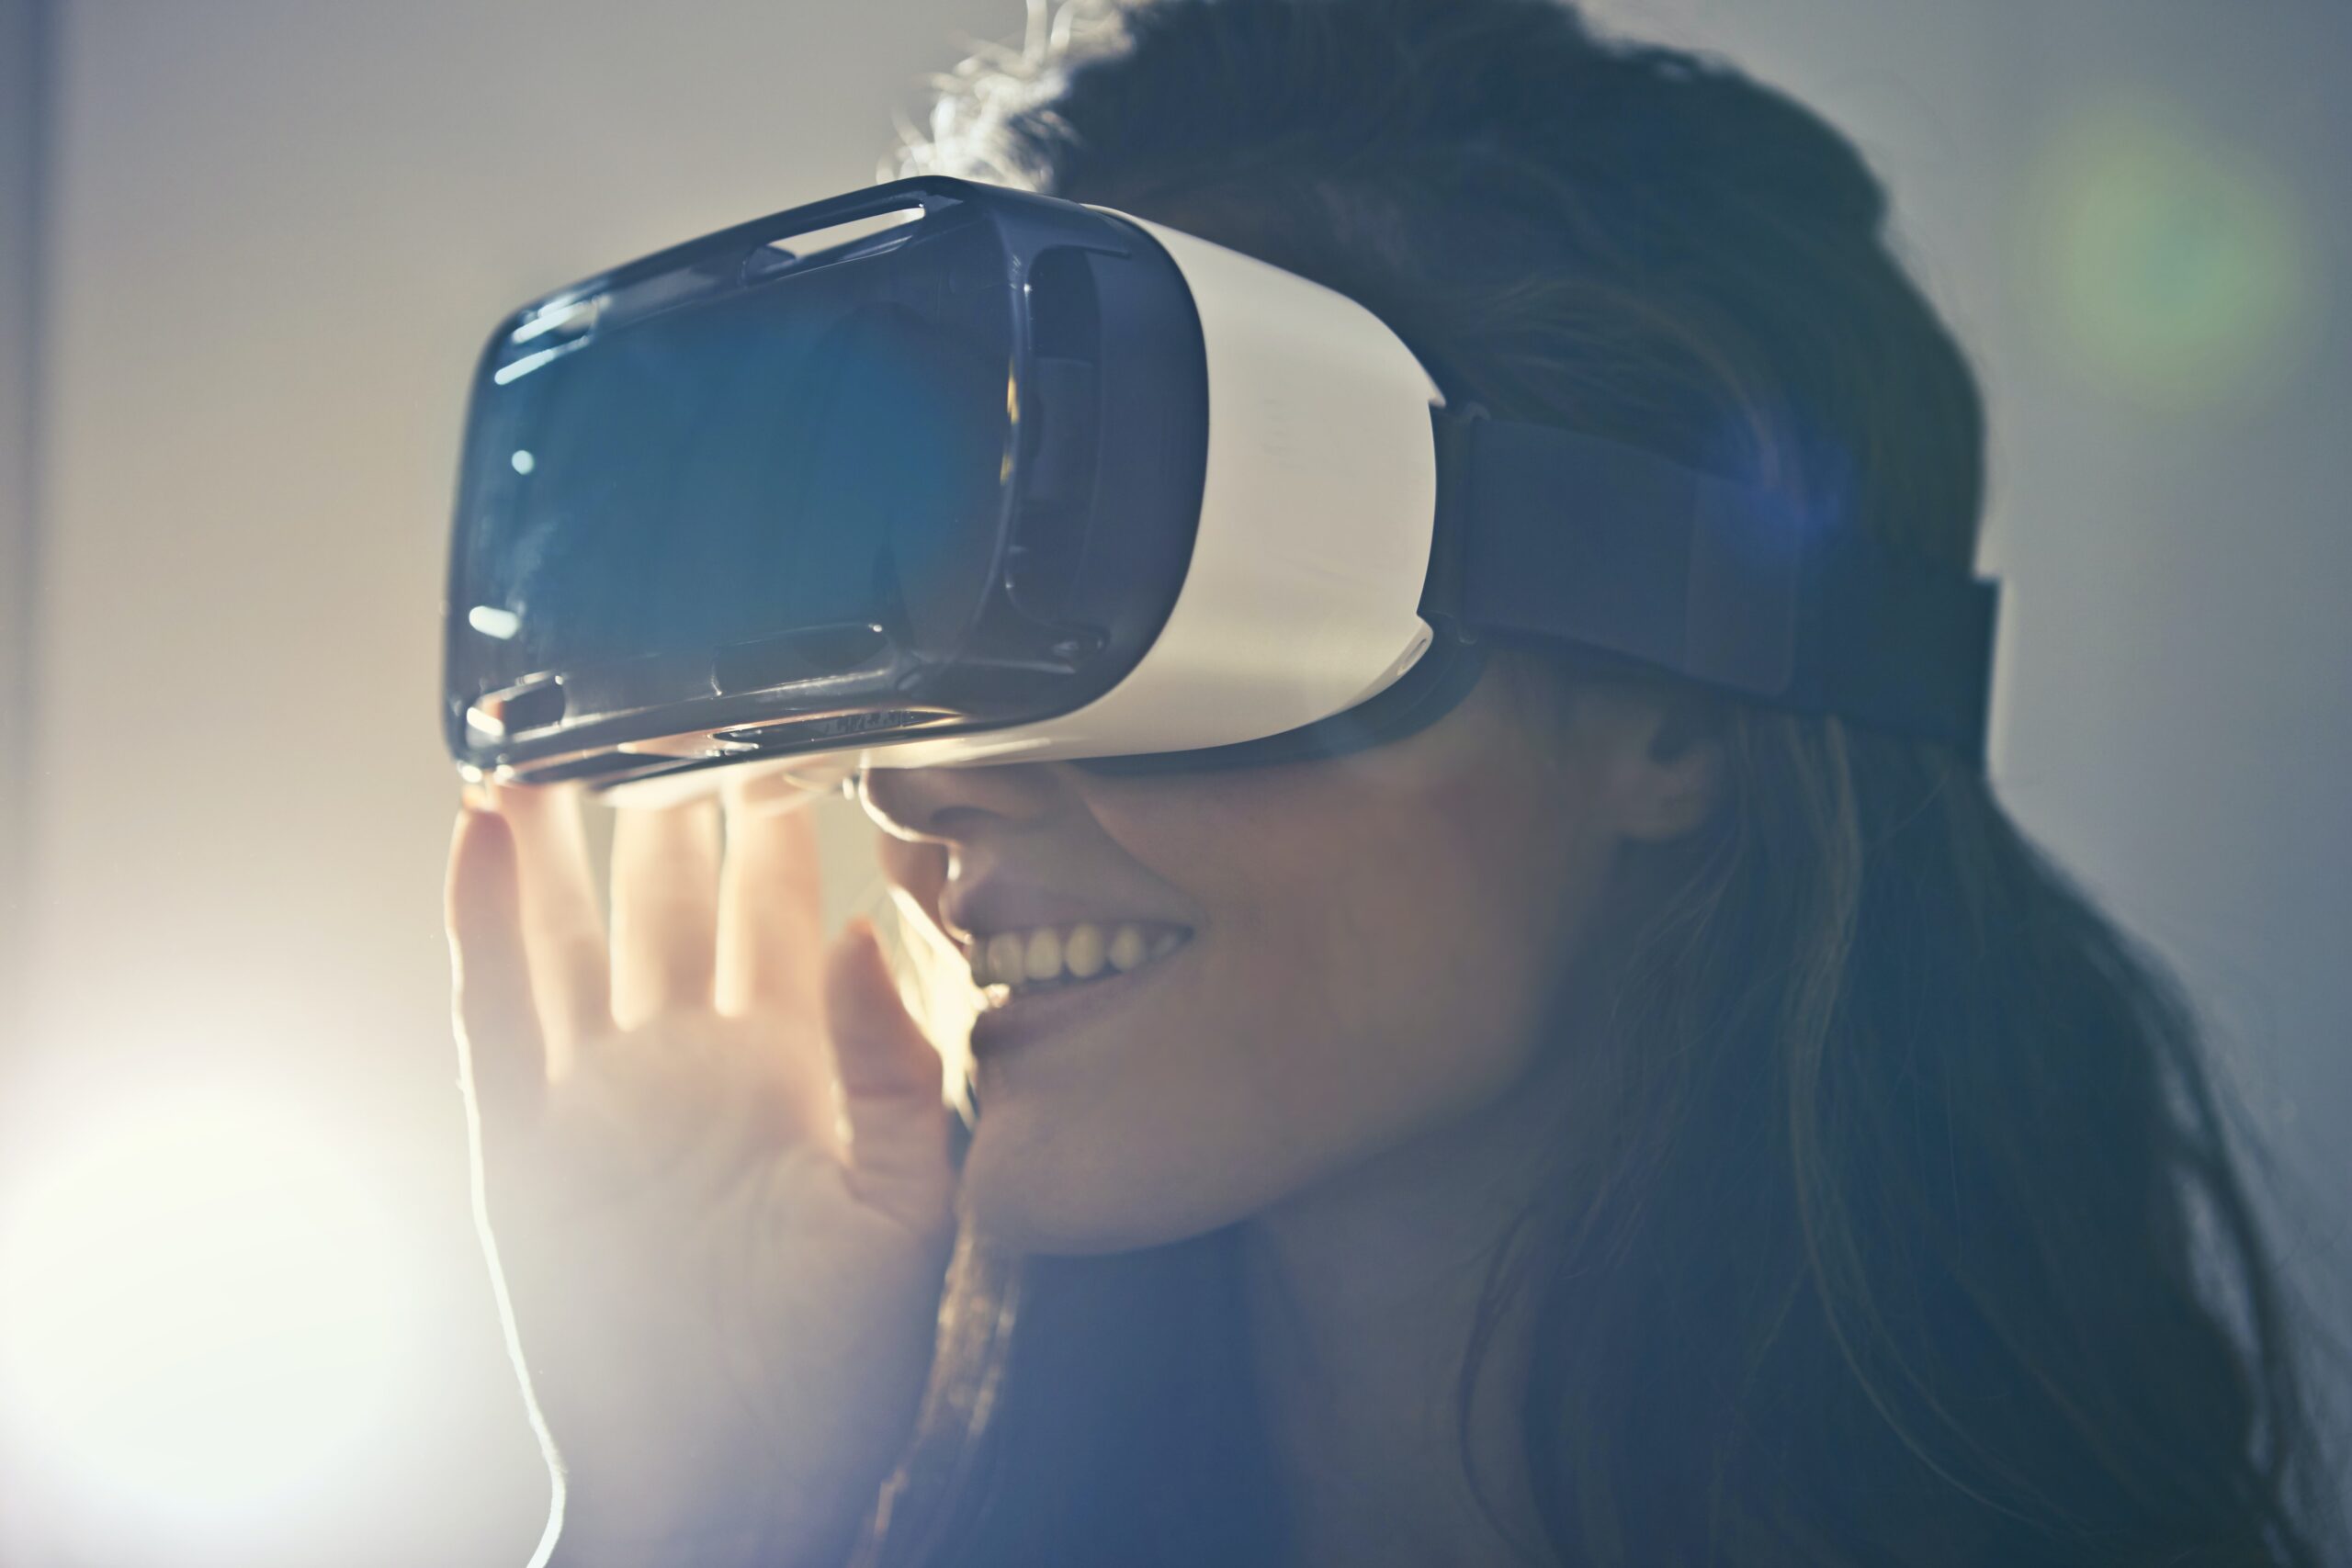 wijk matig Aanvulling VR bril in de zorg helpt bij het verminderen van pijn en angst